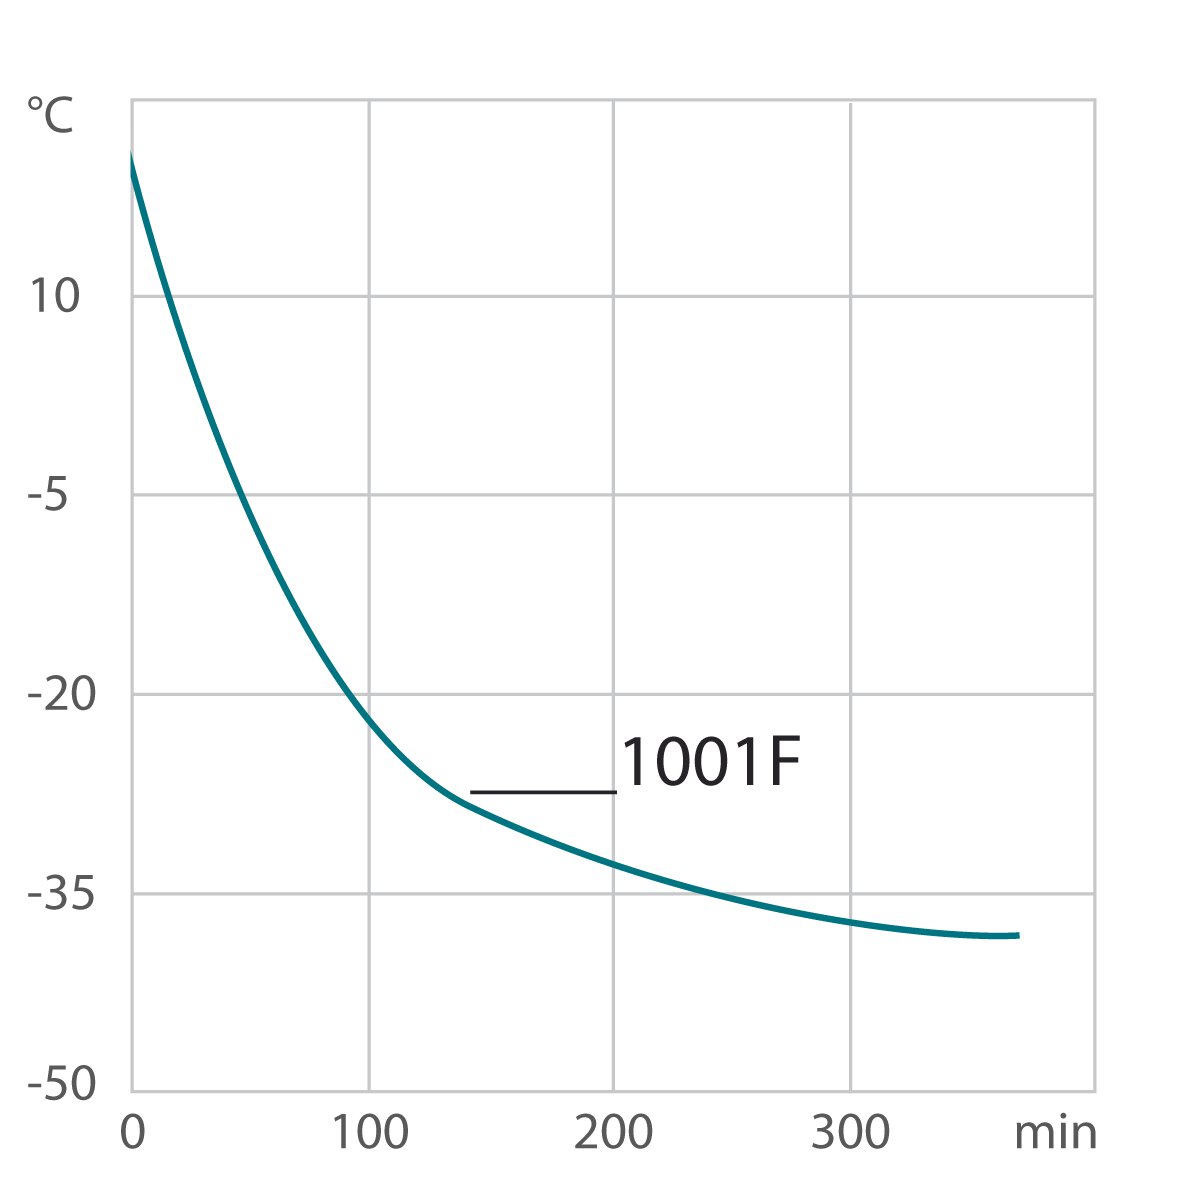 Curva de enfriamiento para el criotstato de circulación 1001F